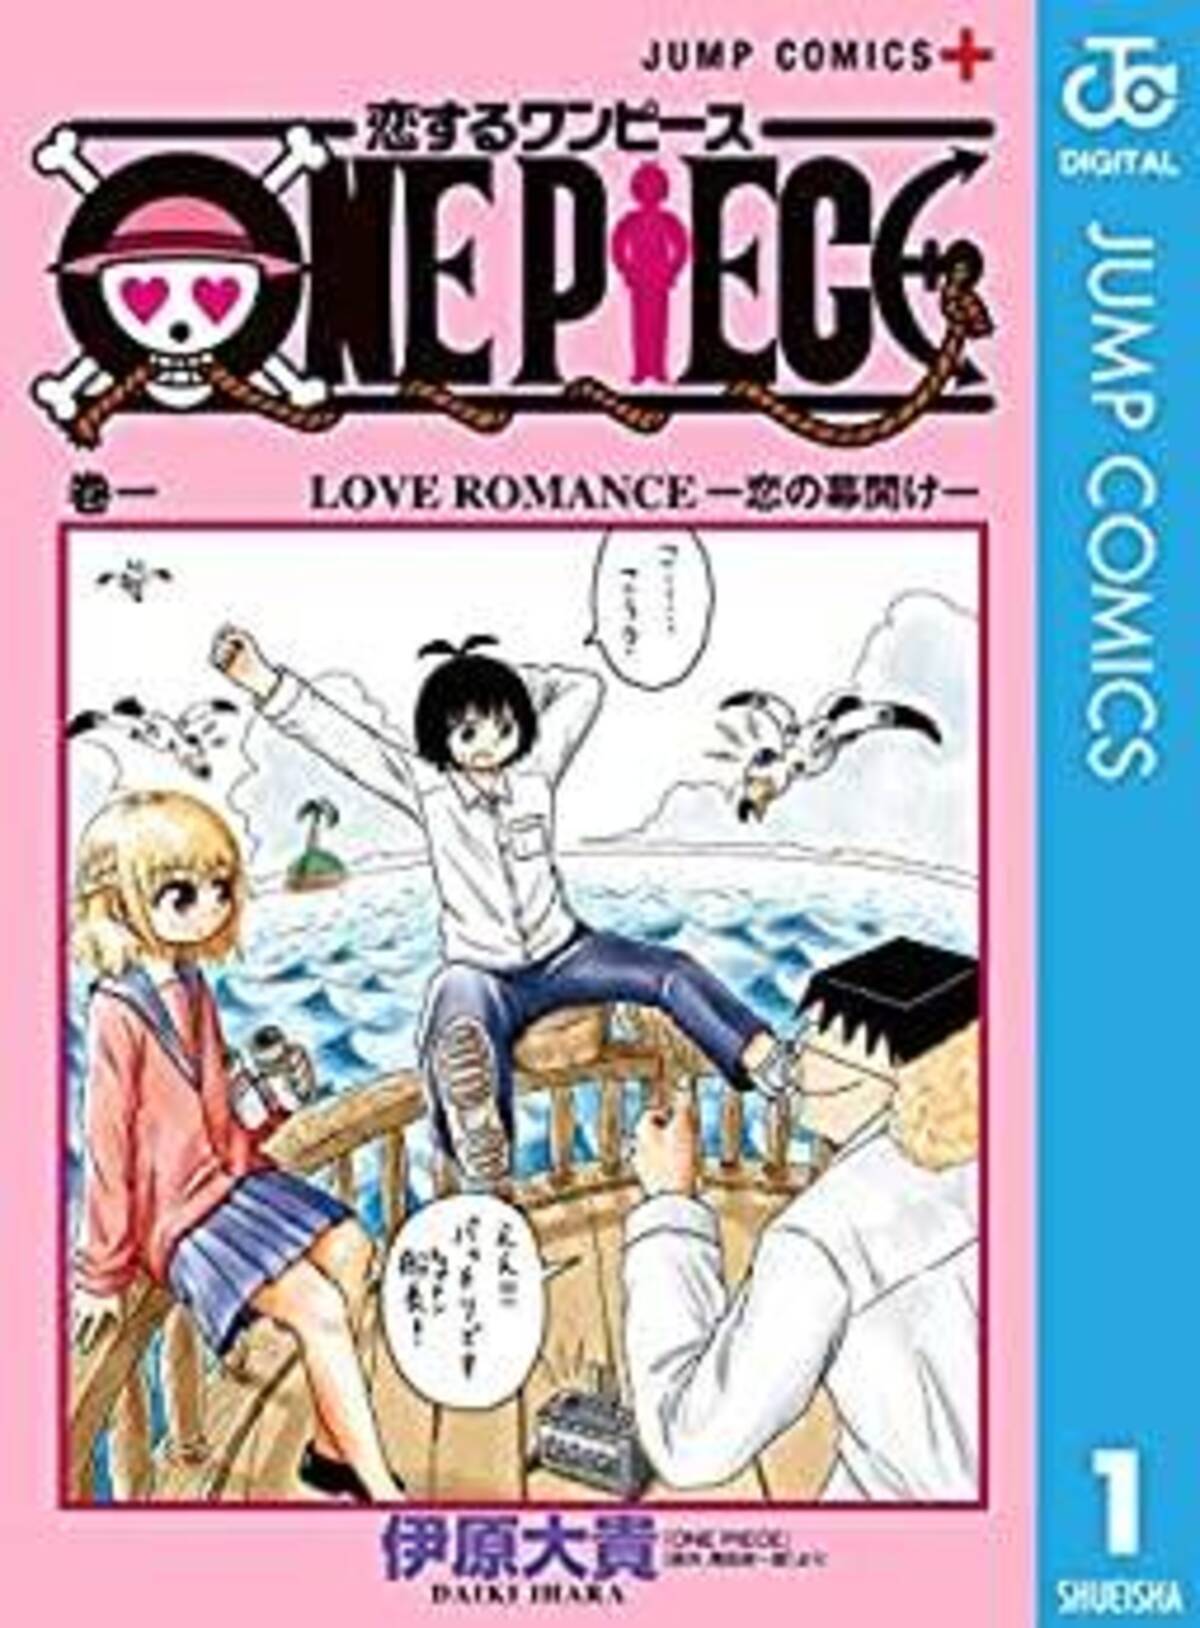 ドン引きレベル One Piece スピンオフギャグの知識と愛がヤバすぎる 2020年5月18日 エキサイトニュース